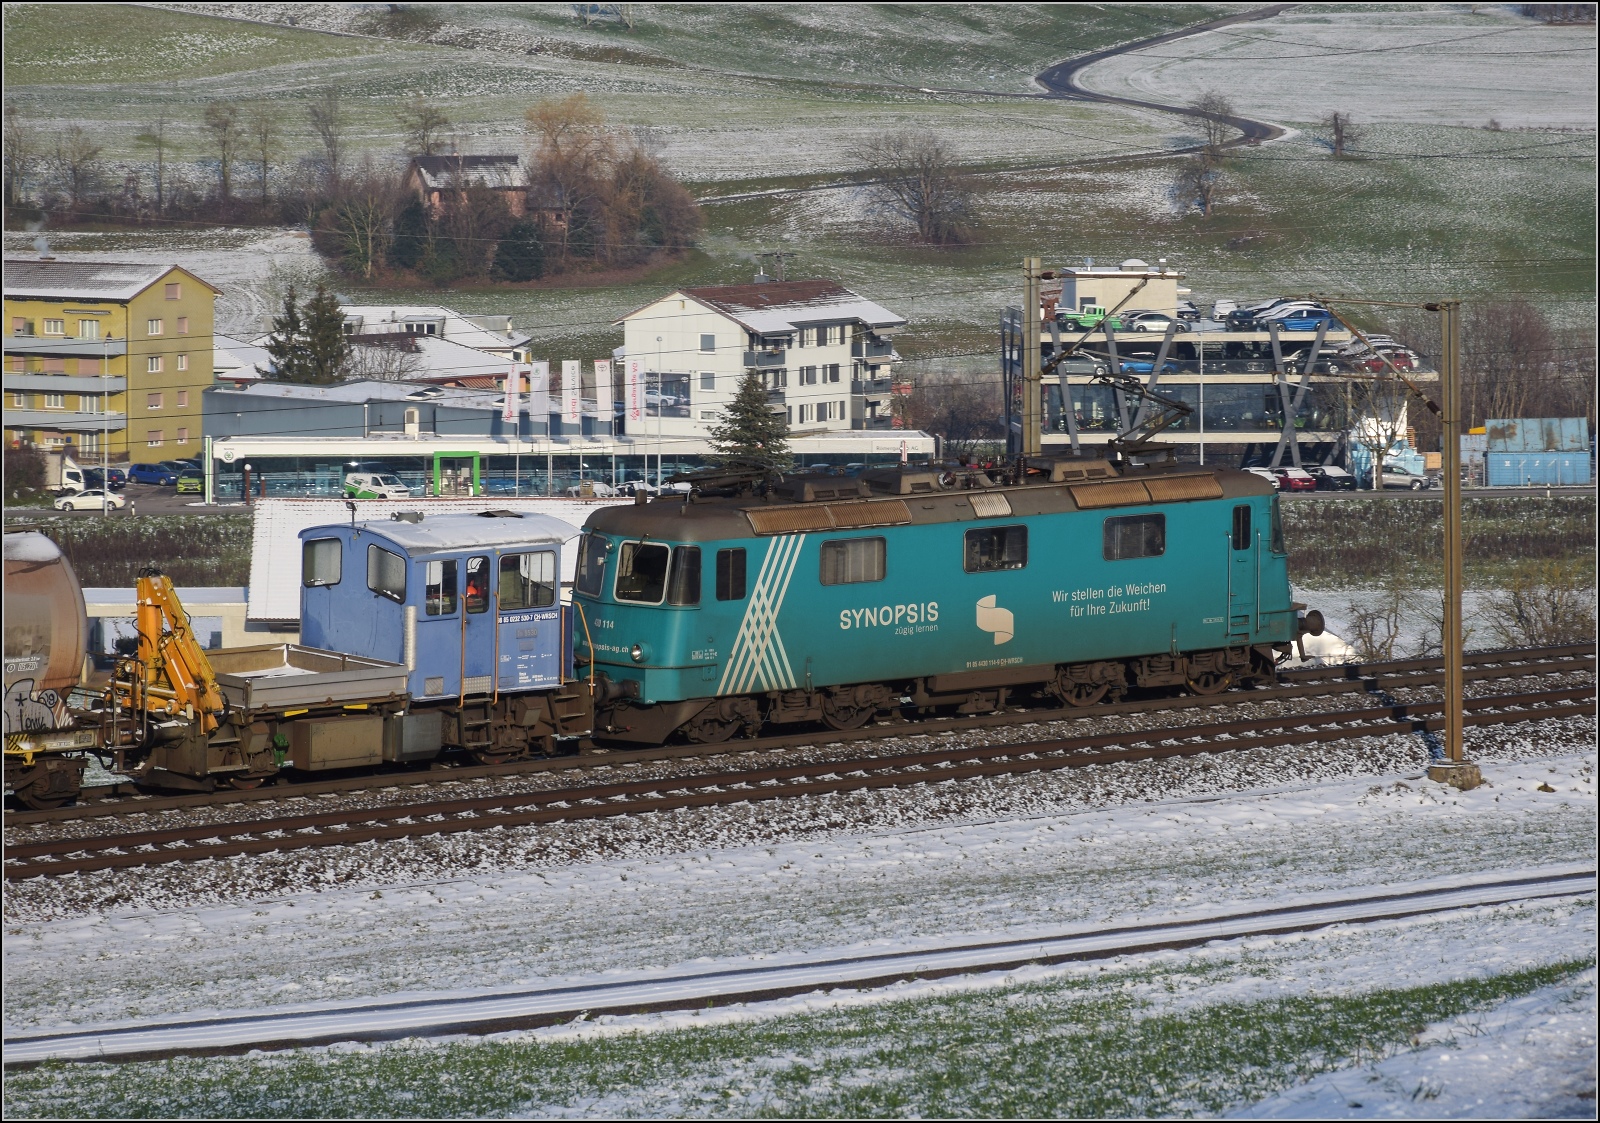 Re 430 114 von WRS mit Synopsis-Werbung schleppt die Rangierhilfe Tm III 9530 mit über den Bözberg. Frick, Dezember 2022.
